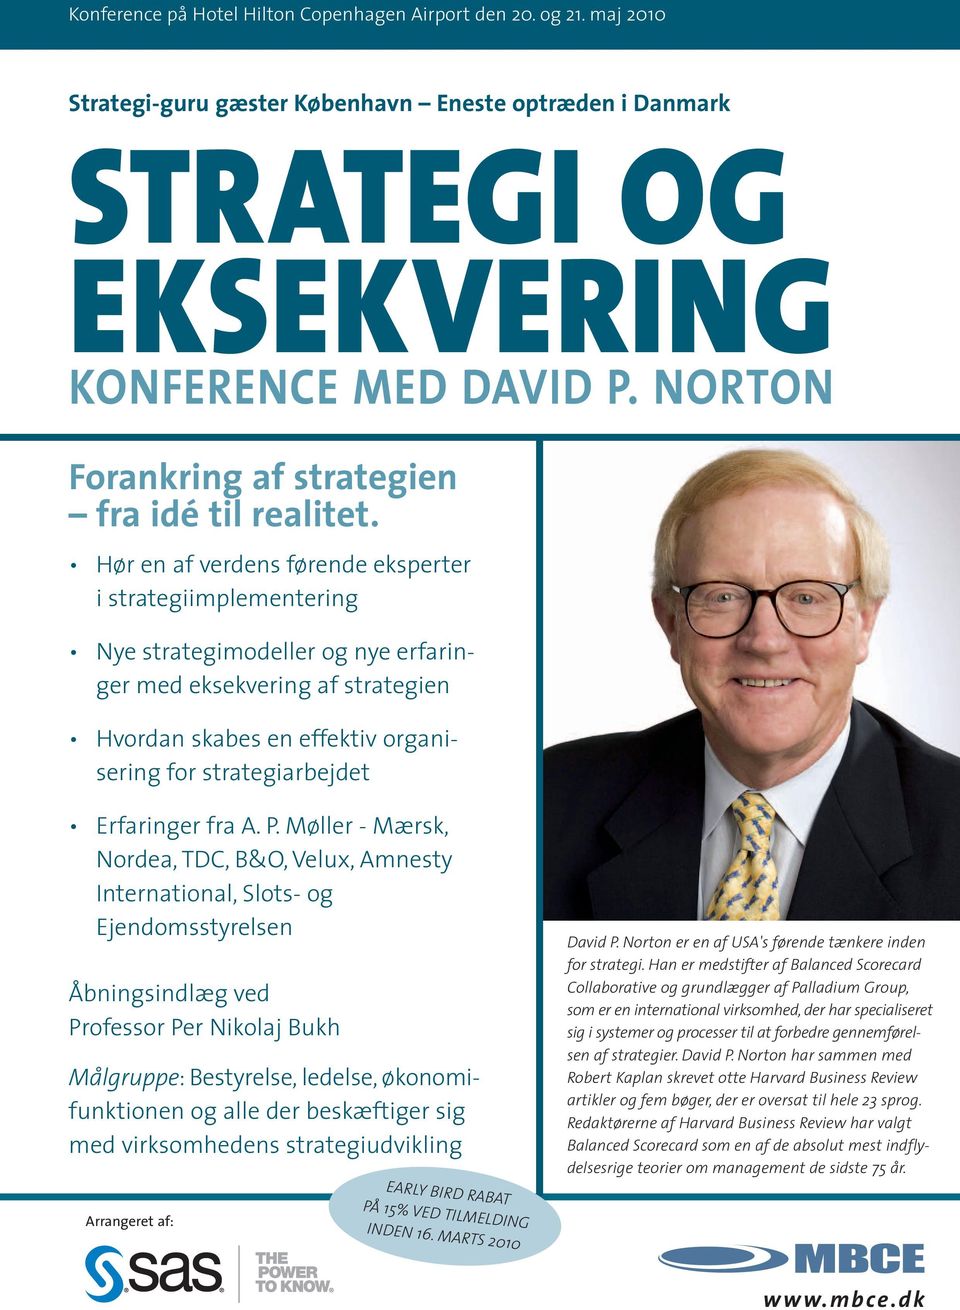 Hør en af verdens førende eksperter i strategiimplementering Nye strategimodeller og nye erfaringer med eksekvering af strategien Hvordan skabes en effektiv organisering for strategiarbejdet